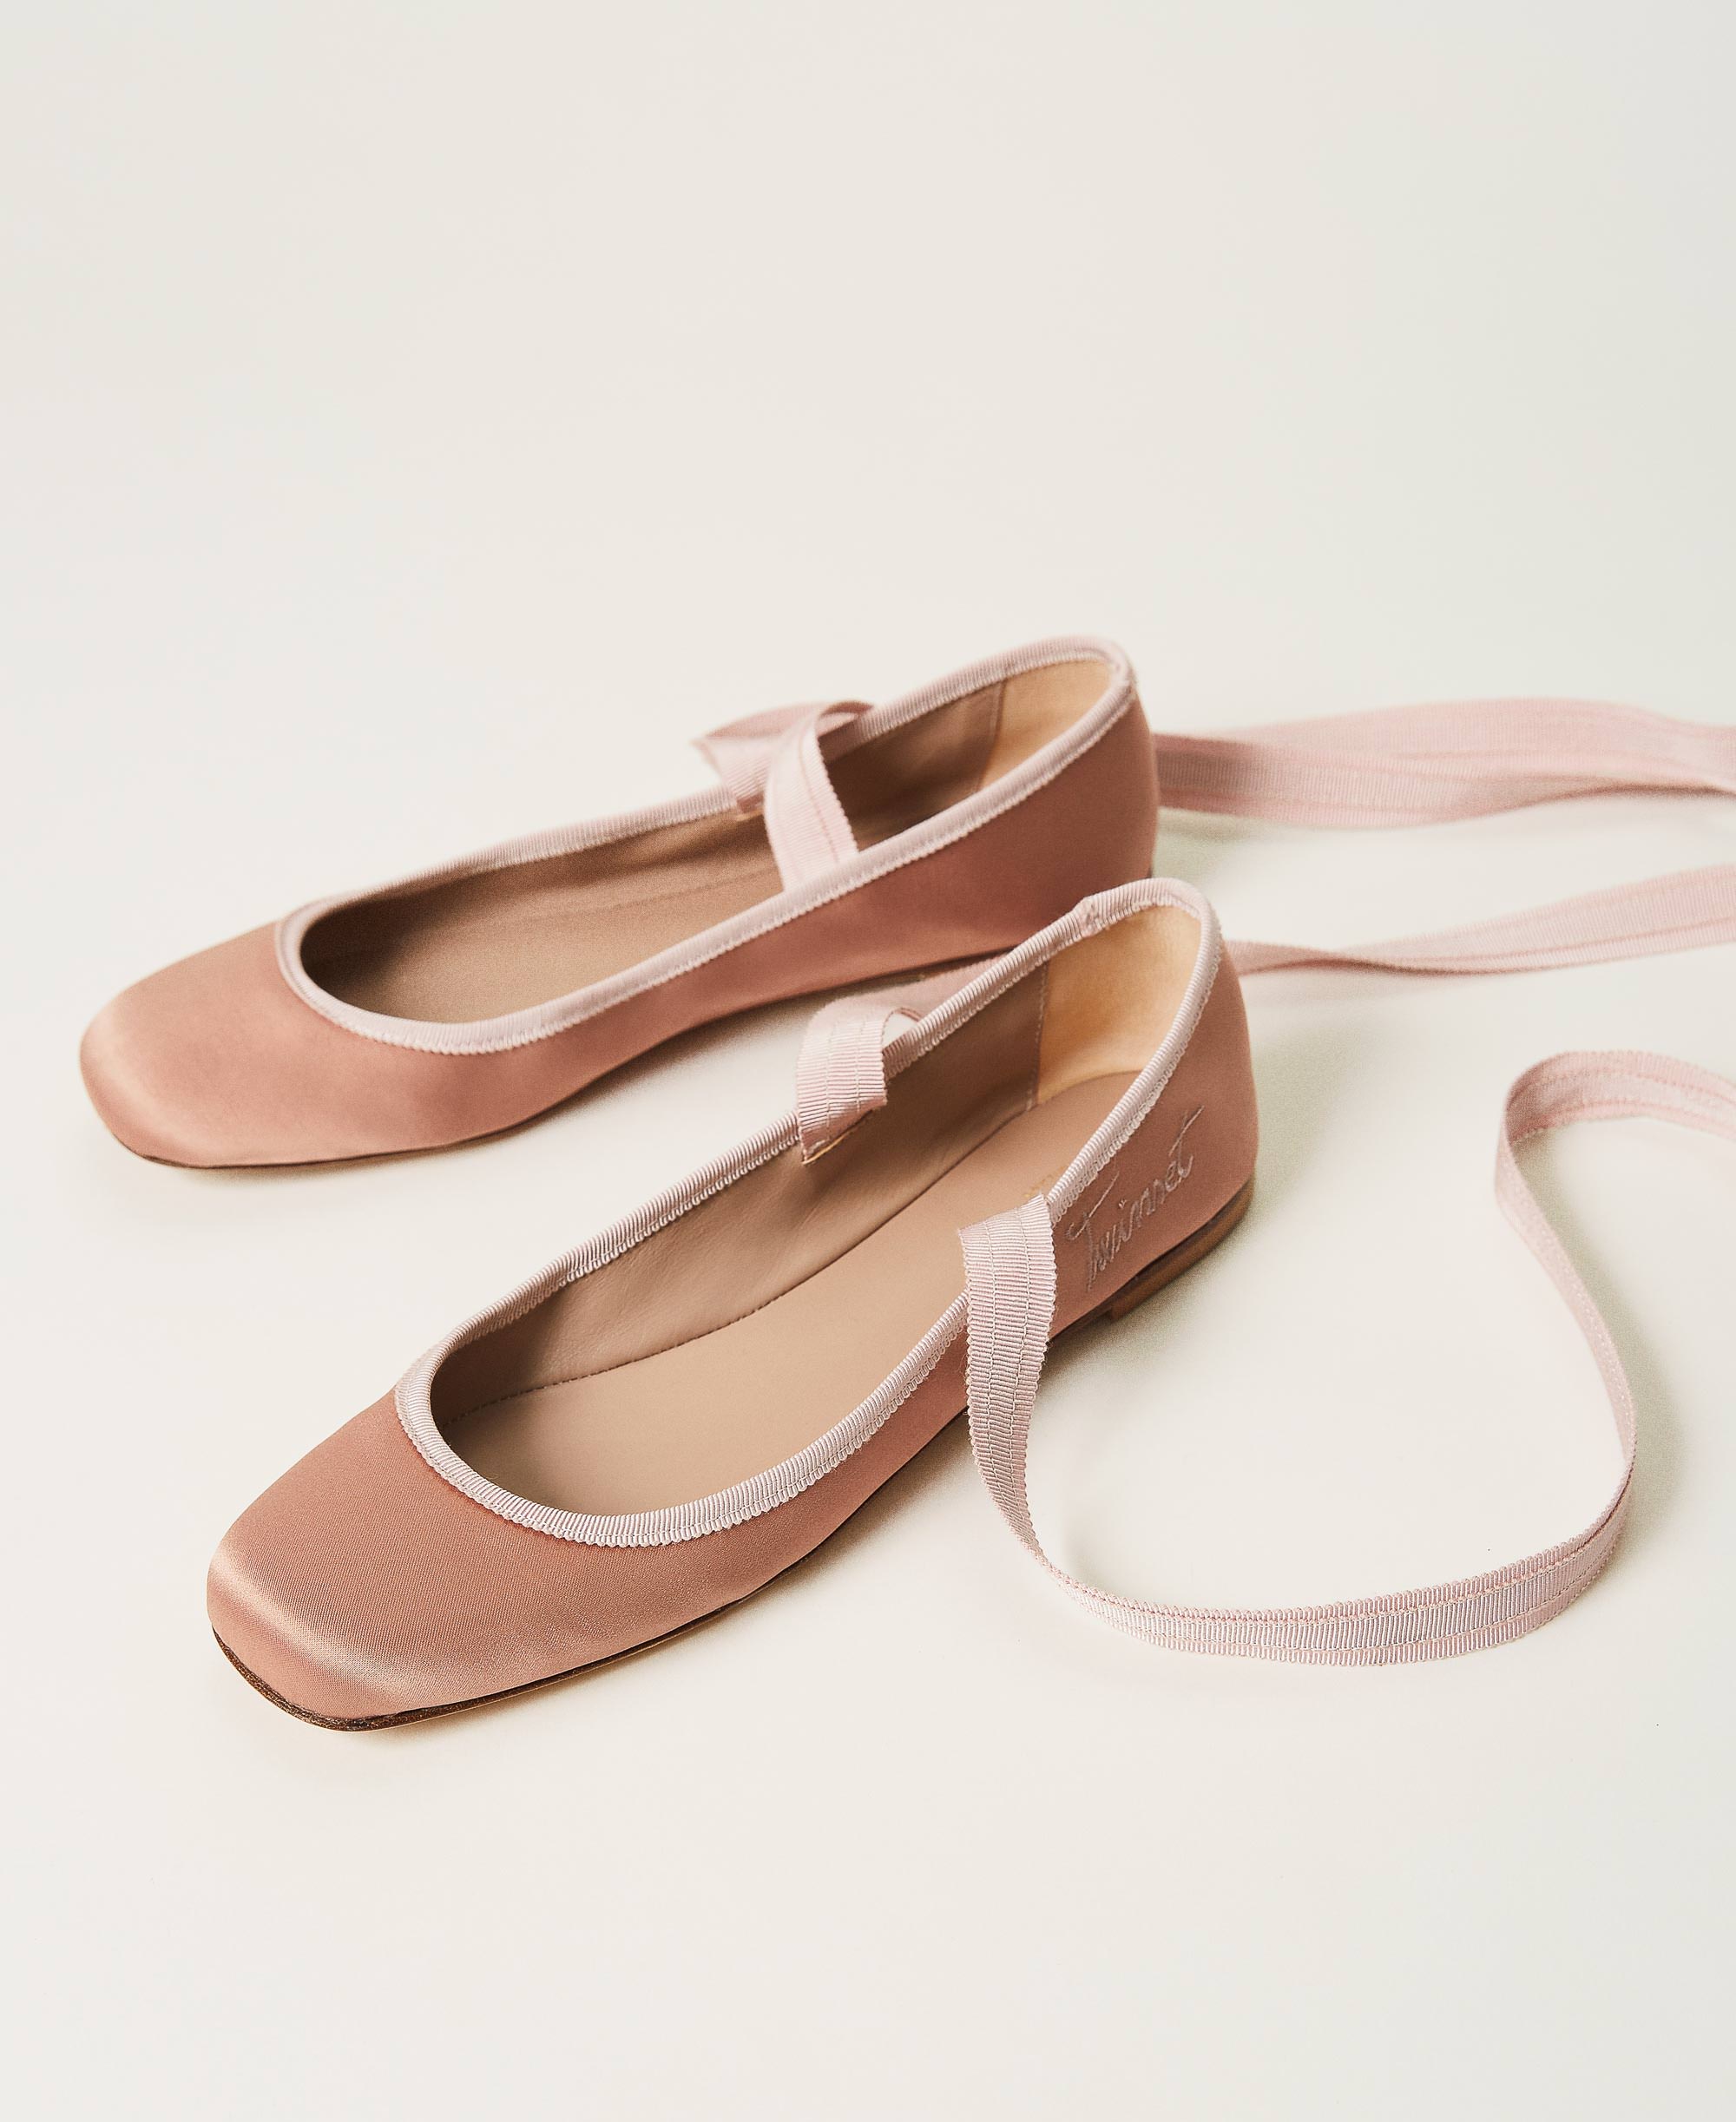 slip on ballerina shoes